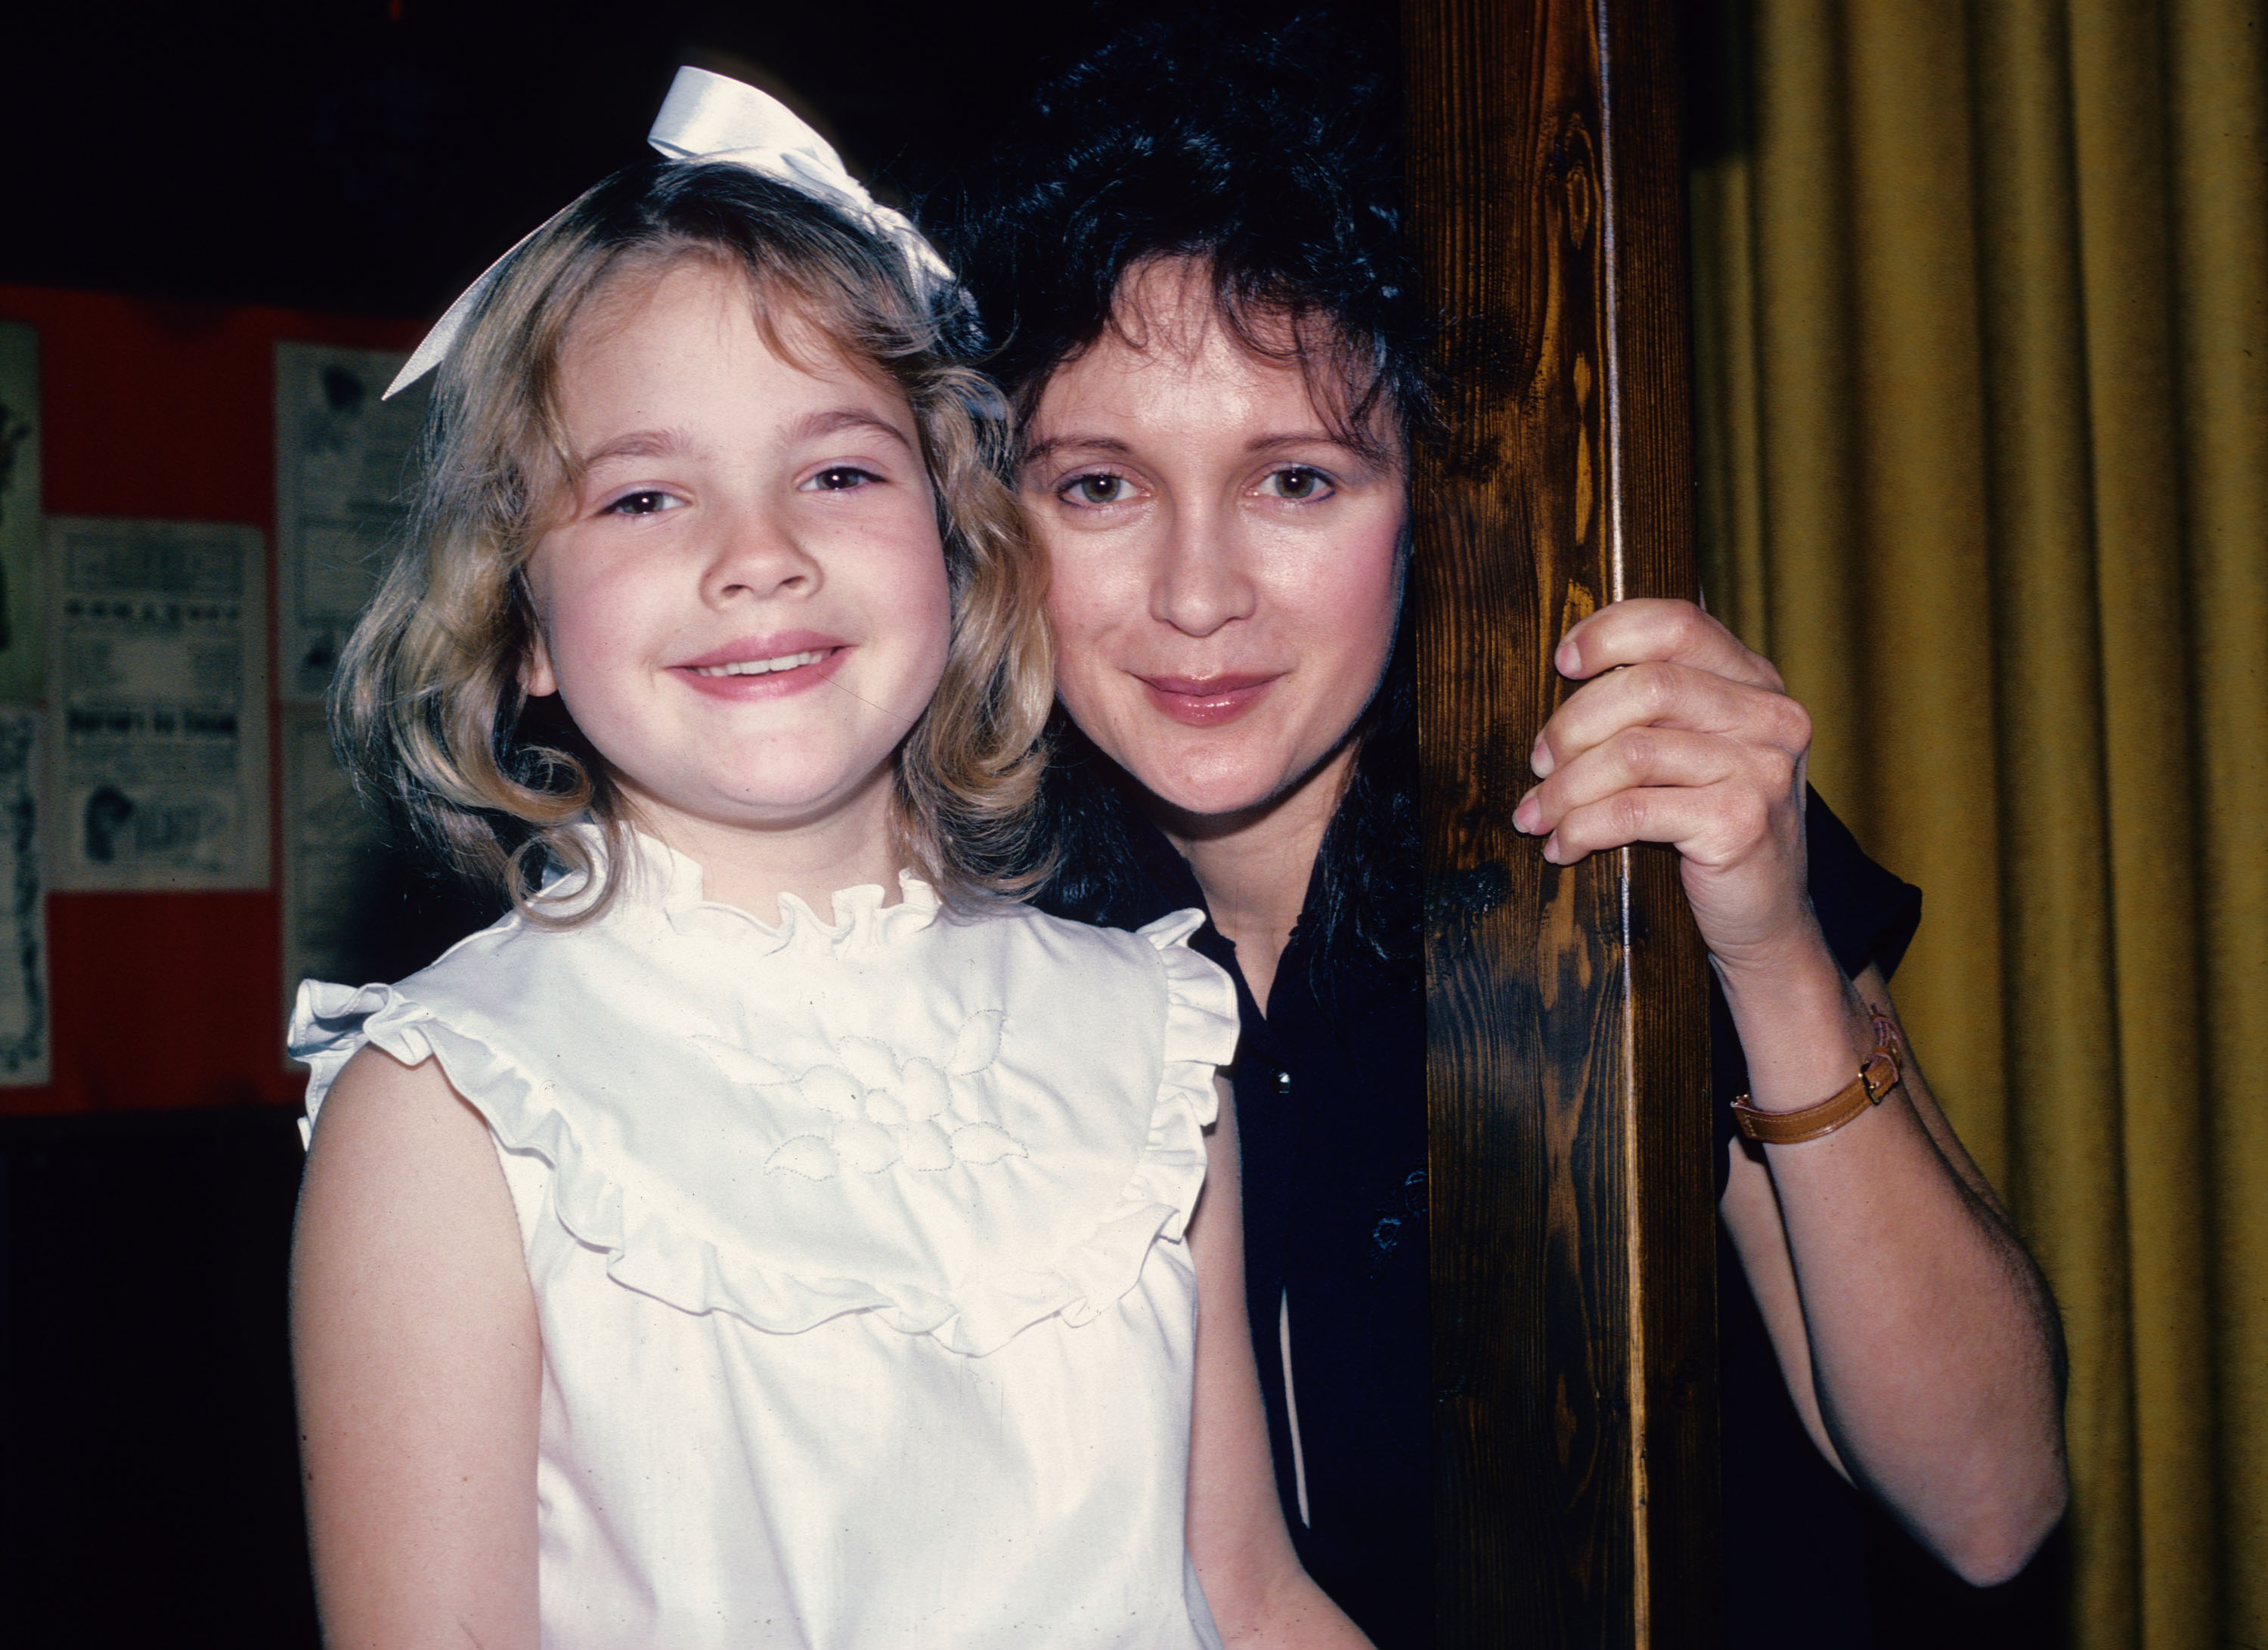 La estrella de cine posa para una fotografía con su madre en Nueva York, el 8 de junio de 1982. | Fuente: Getty Images